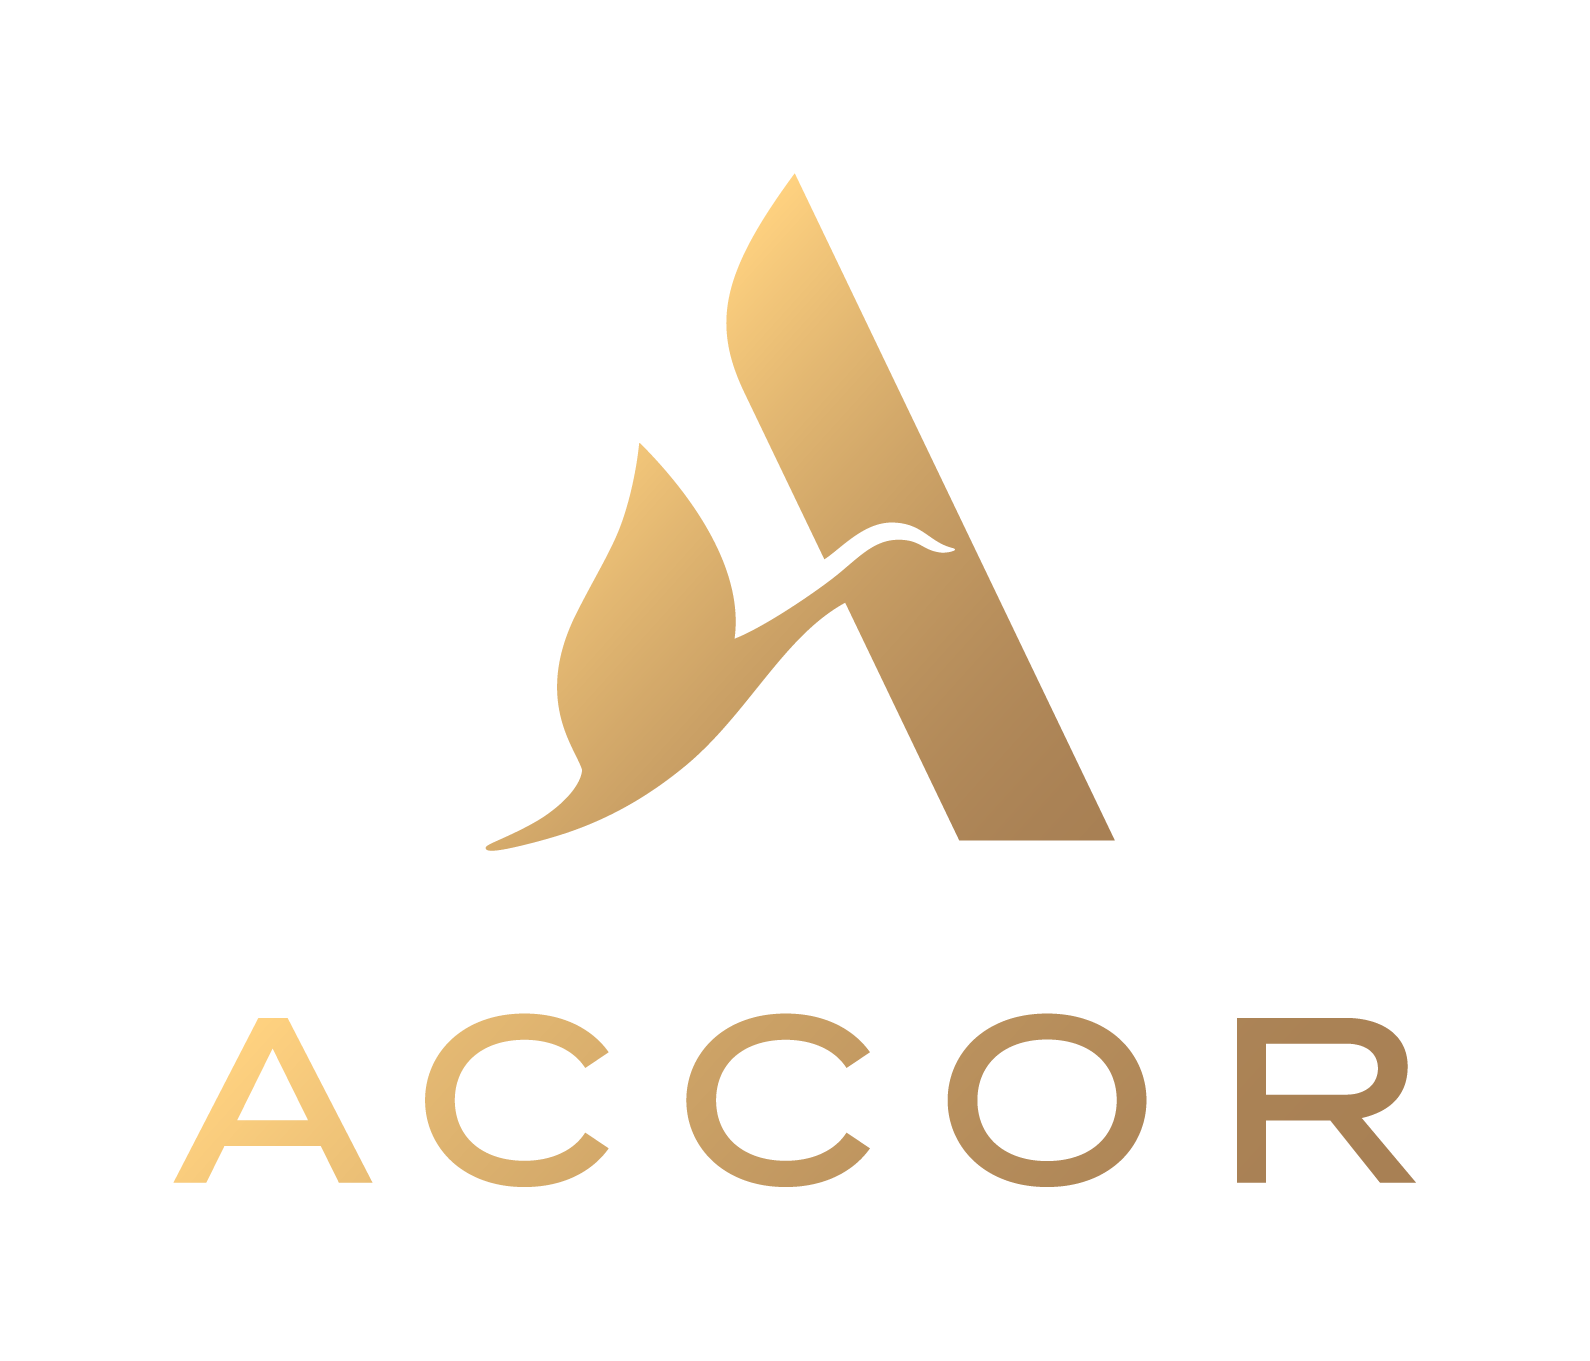 Accor_logo_Or_RVB